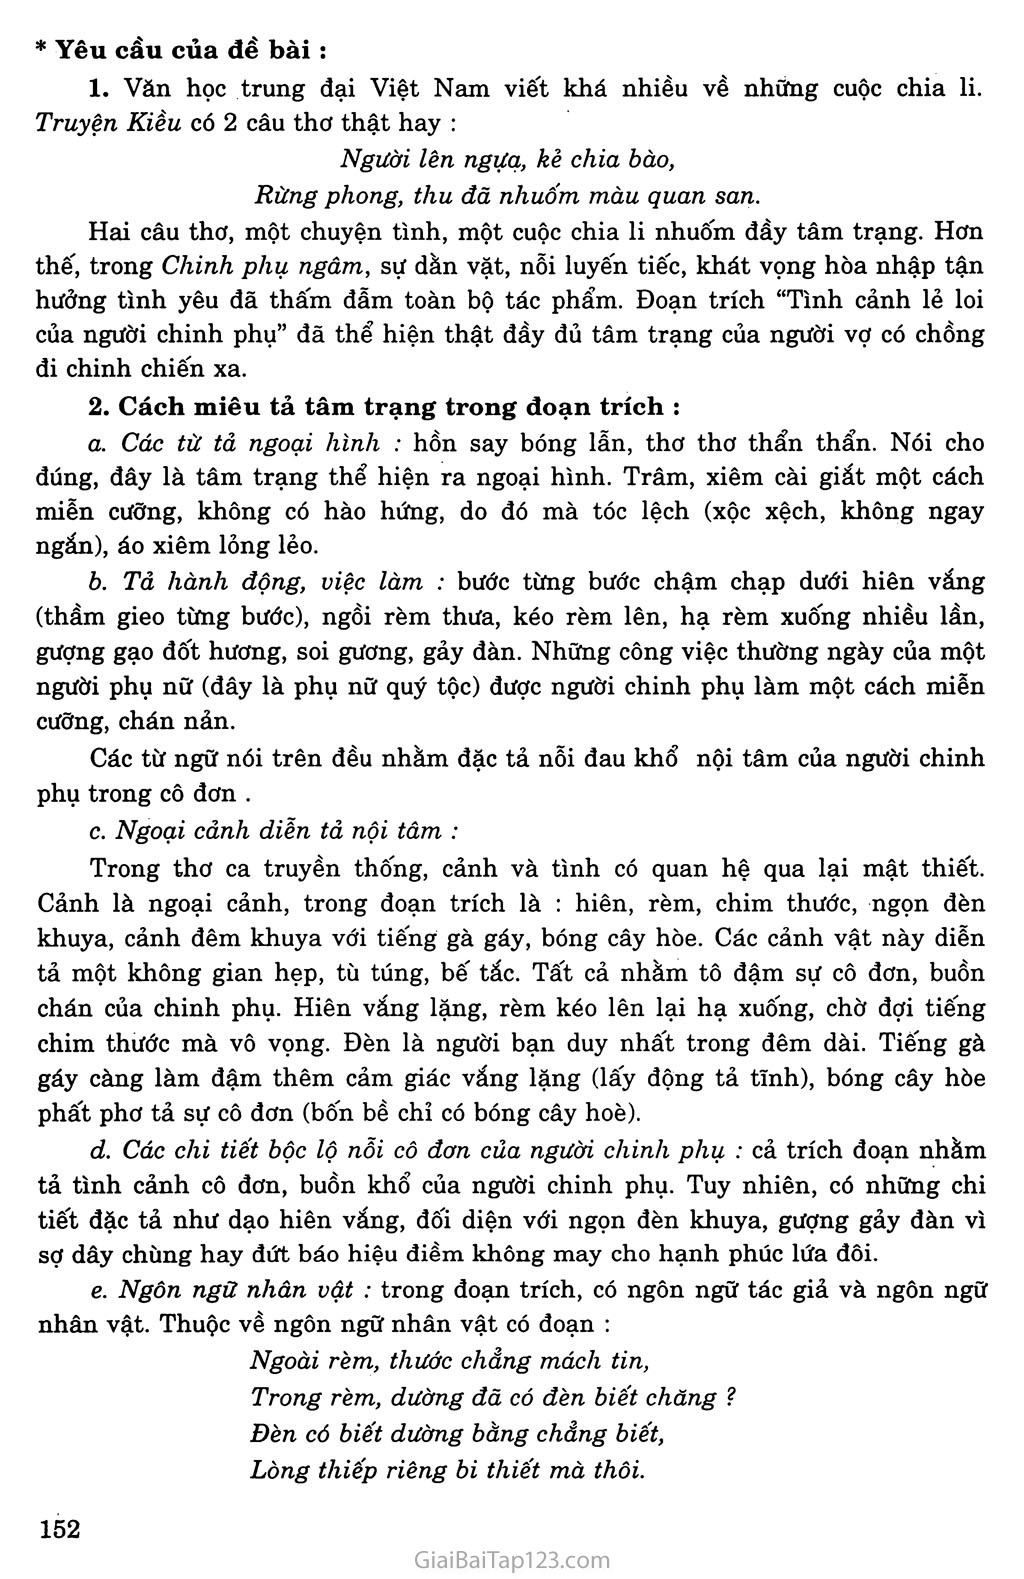 Chinh phụ ngâm - Một tác phẩm văn học kinh điển của Nguyễn Gia Thiều sẽ được giới thiệu qua hình ảnh độc đáo. Cùng đắm chìm vào thế giới của Chinh phụ ngâm để hiểu thêm về câu chuyện tình cảm đầy xúc động và nghĩa cảm của người phụ nữ trong gia đình.